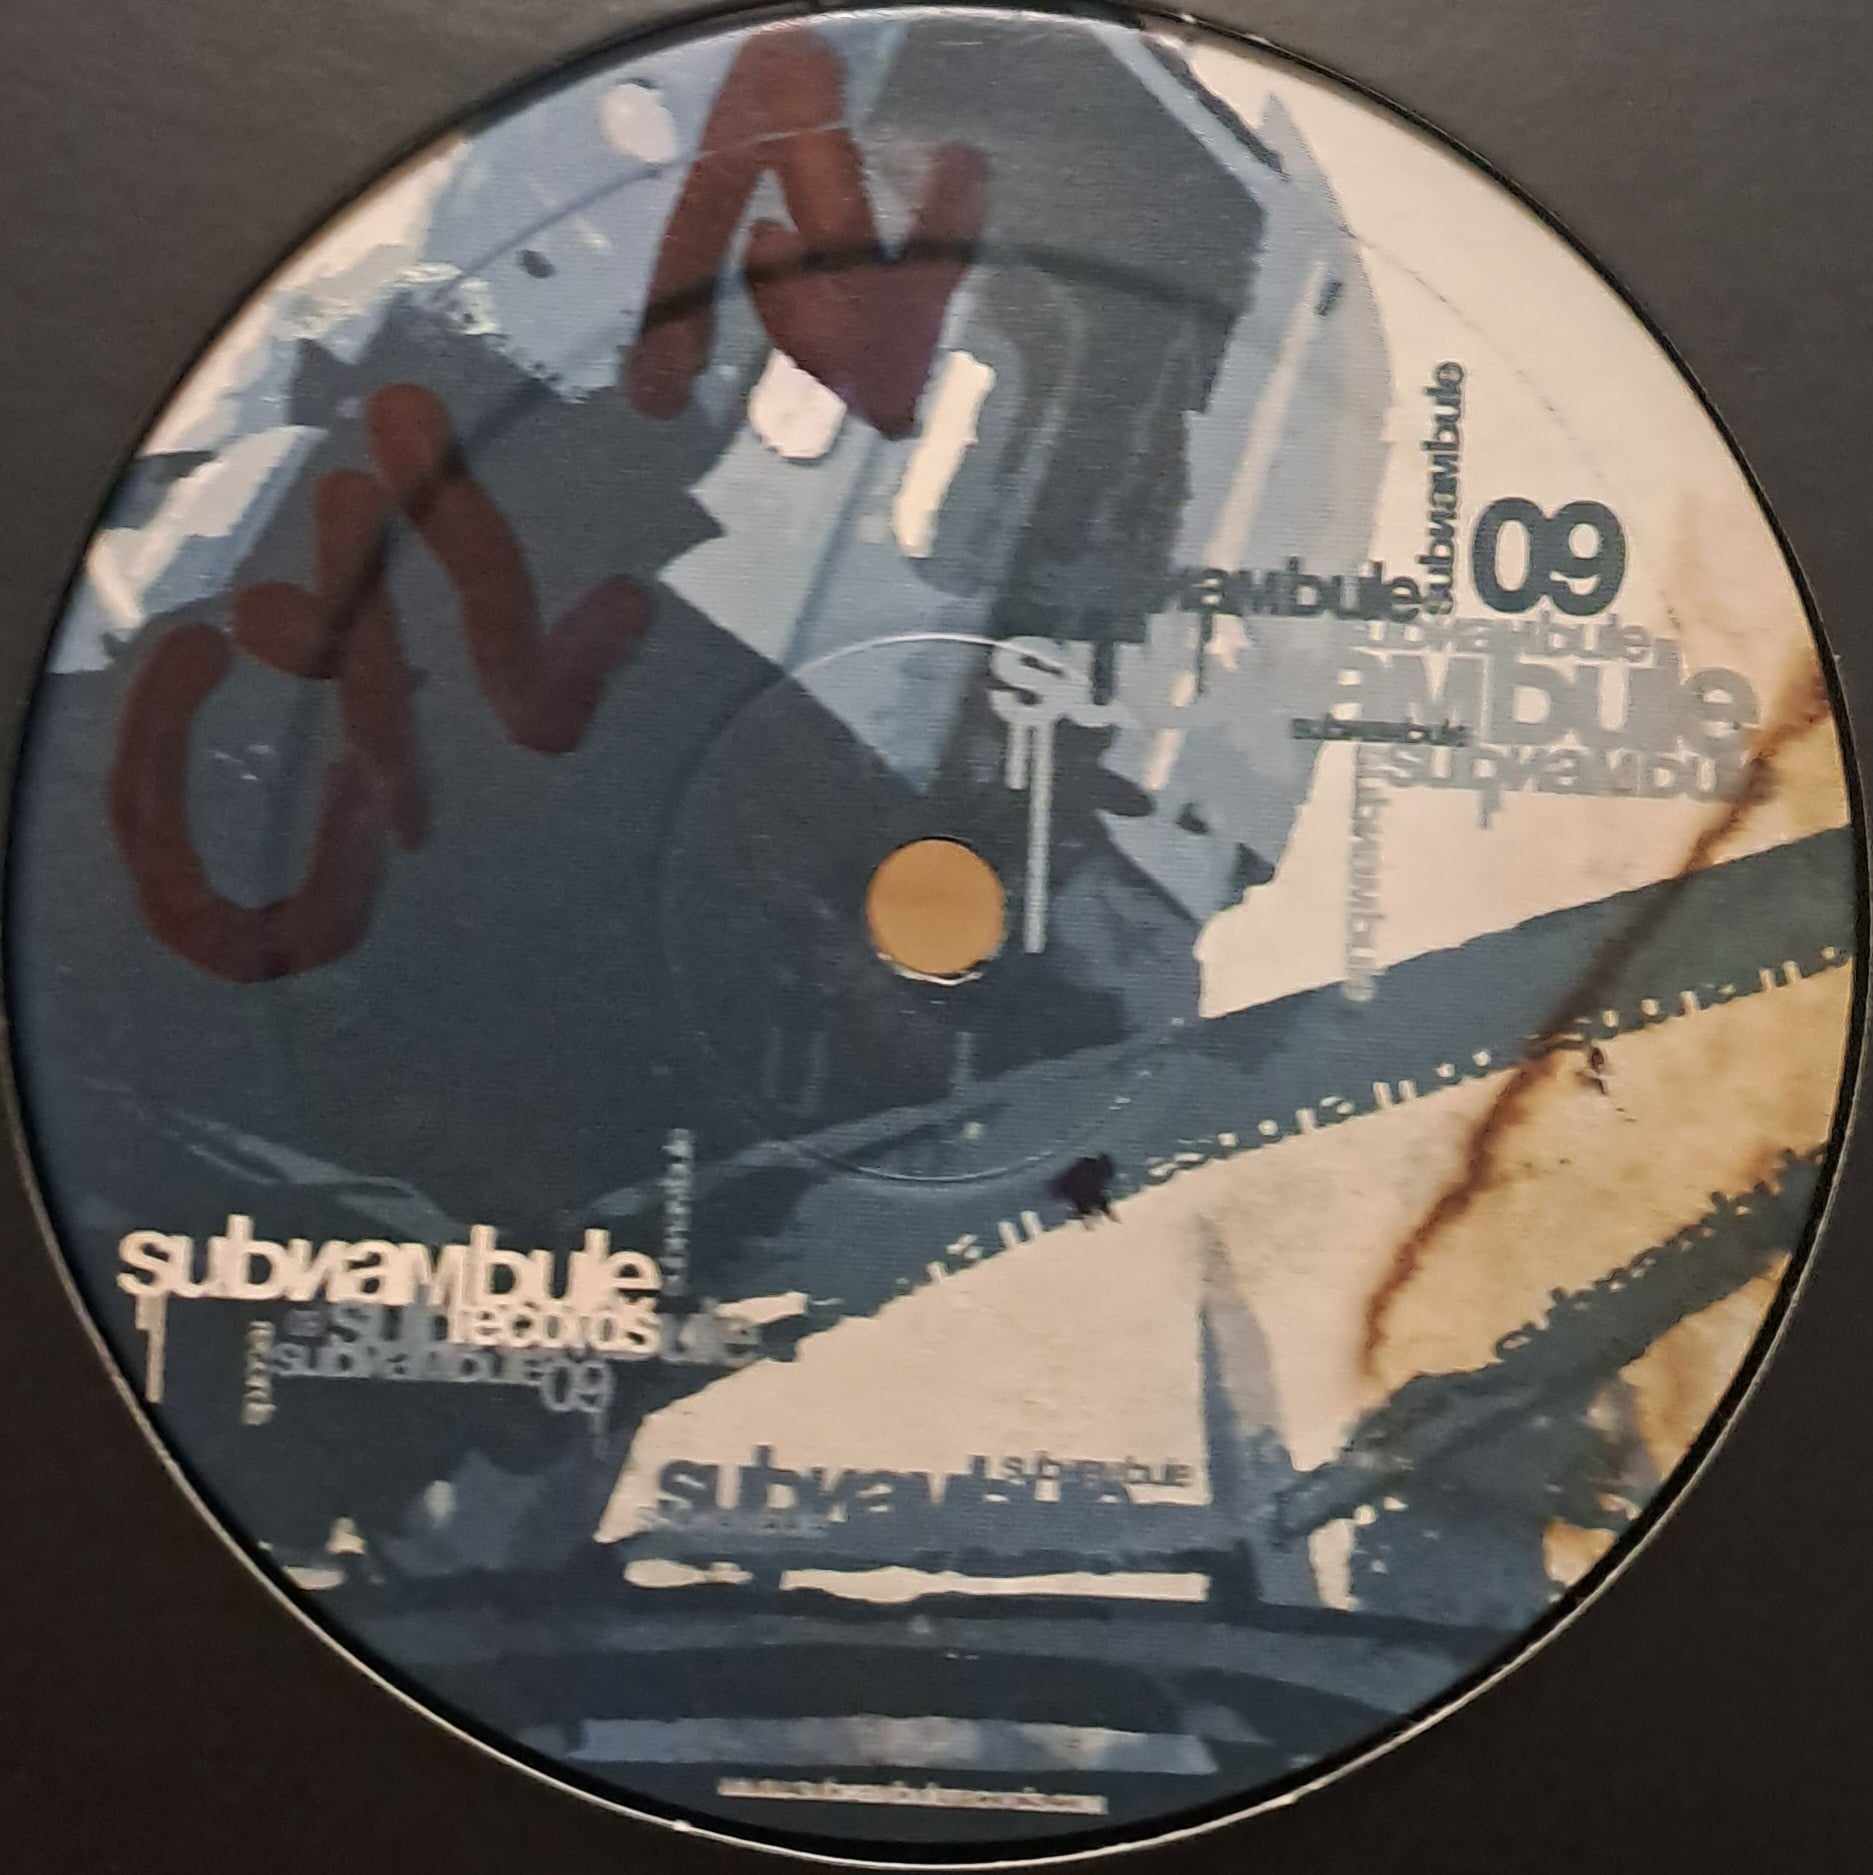 Subnambule 09 - vinyle freetekno